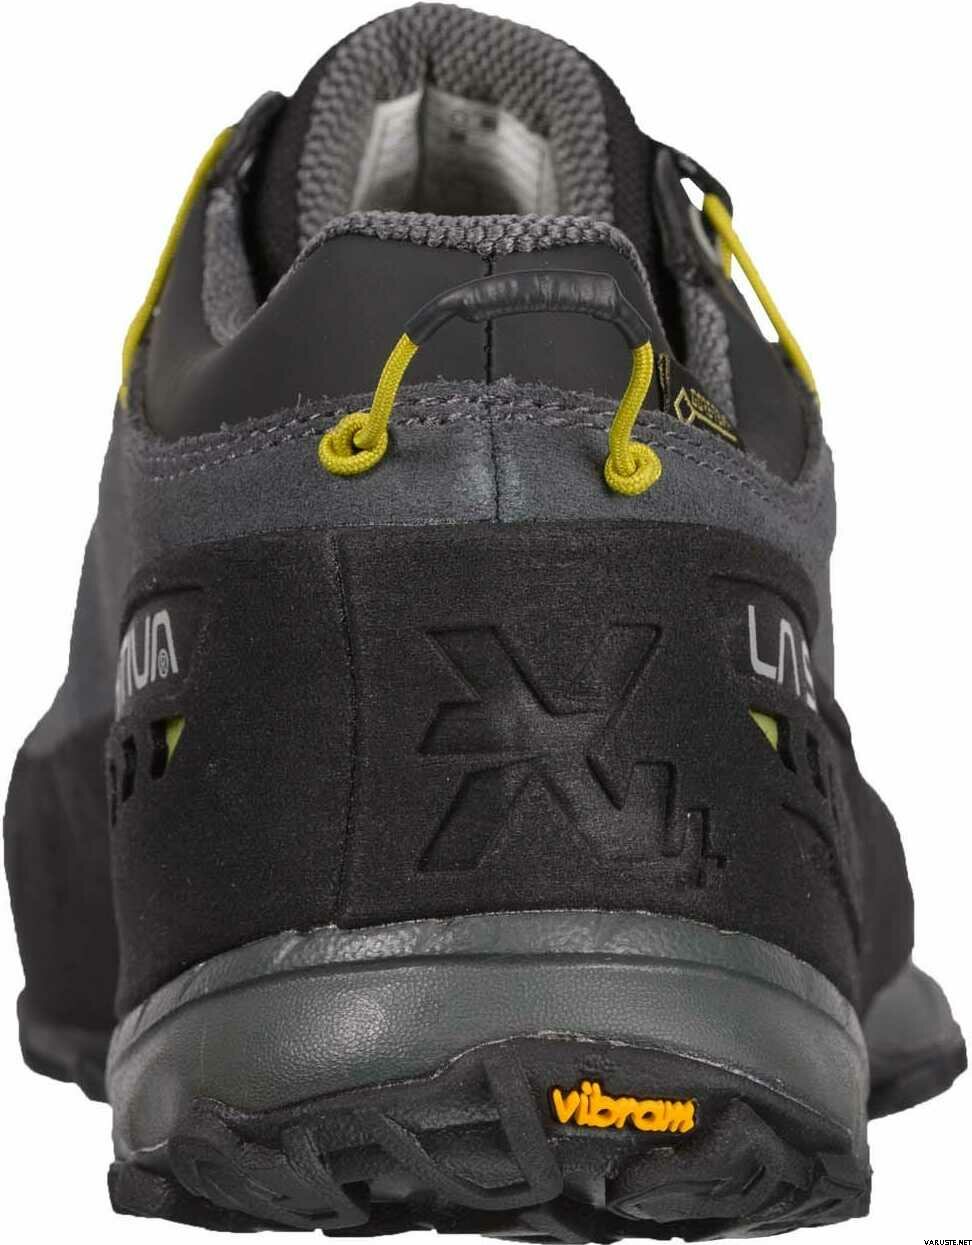 La Sportiva TX4 GTX | Approach shoes | Varuste.net English